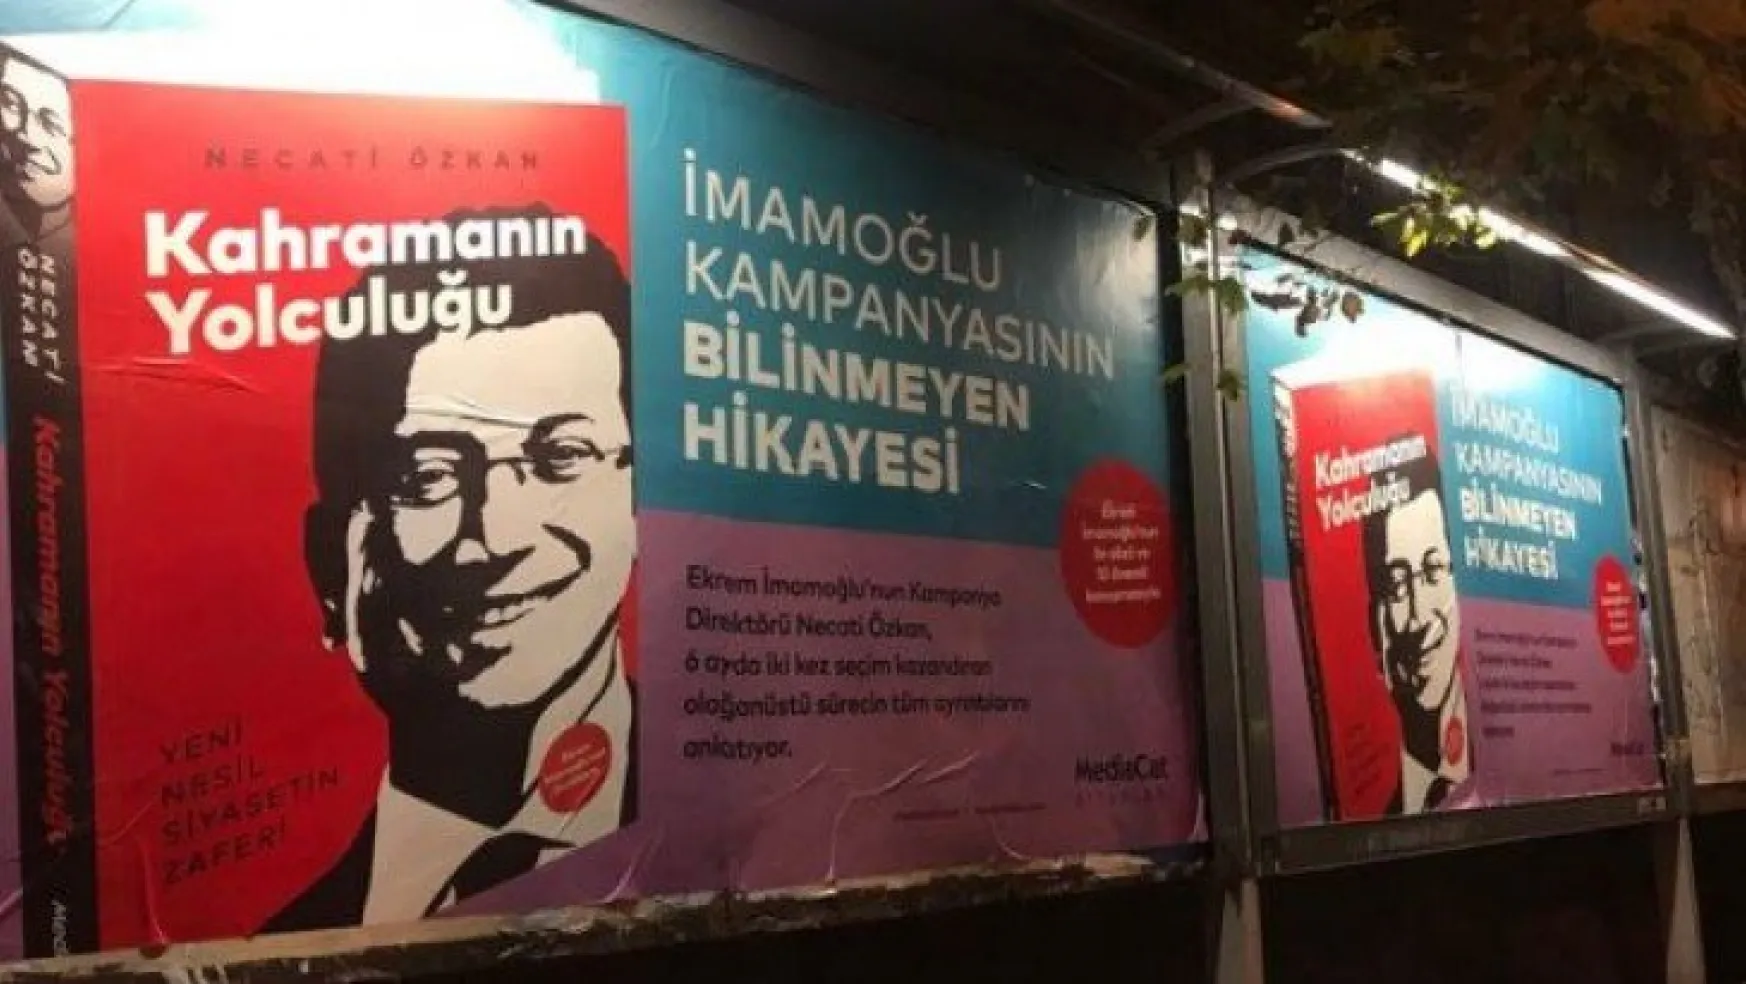 Kocaeli Büyükşehir'in billboardlarında İmamoğlu propagandası!